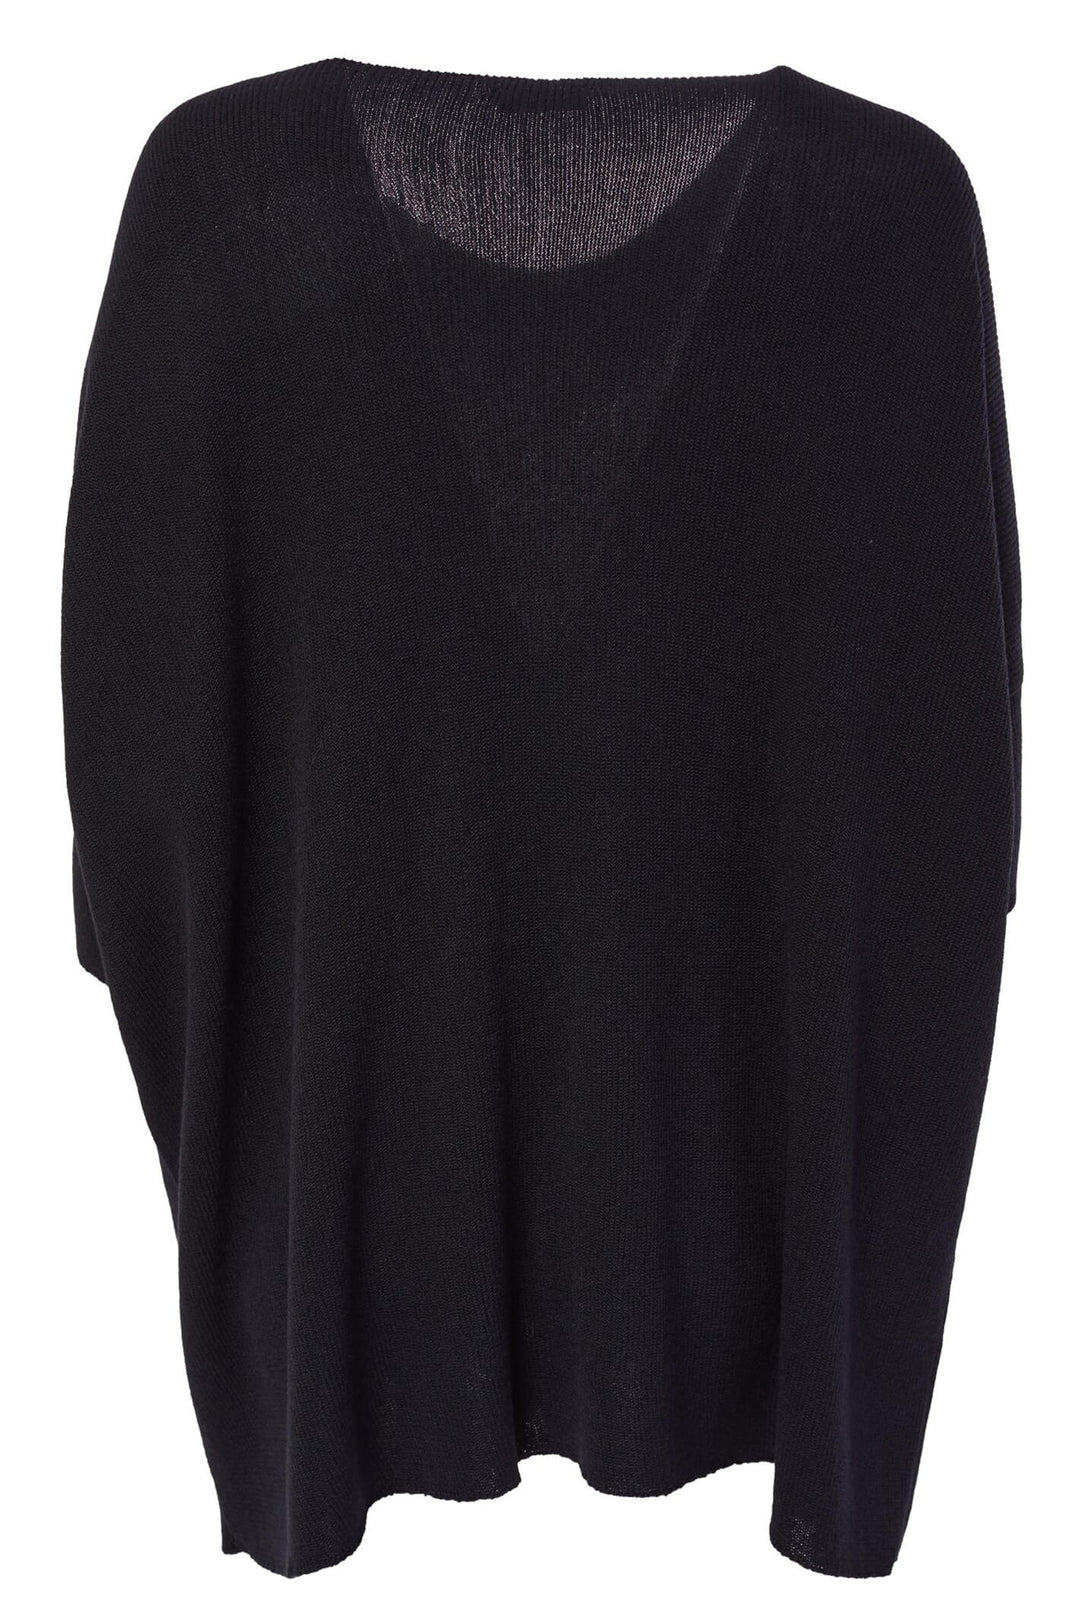 Naya NAW23205 Black Cream Oversize Knit Jumper - Olivia Grace Fashion